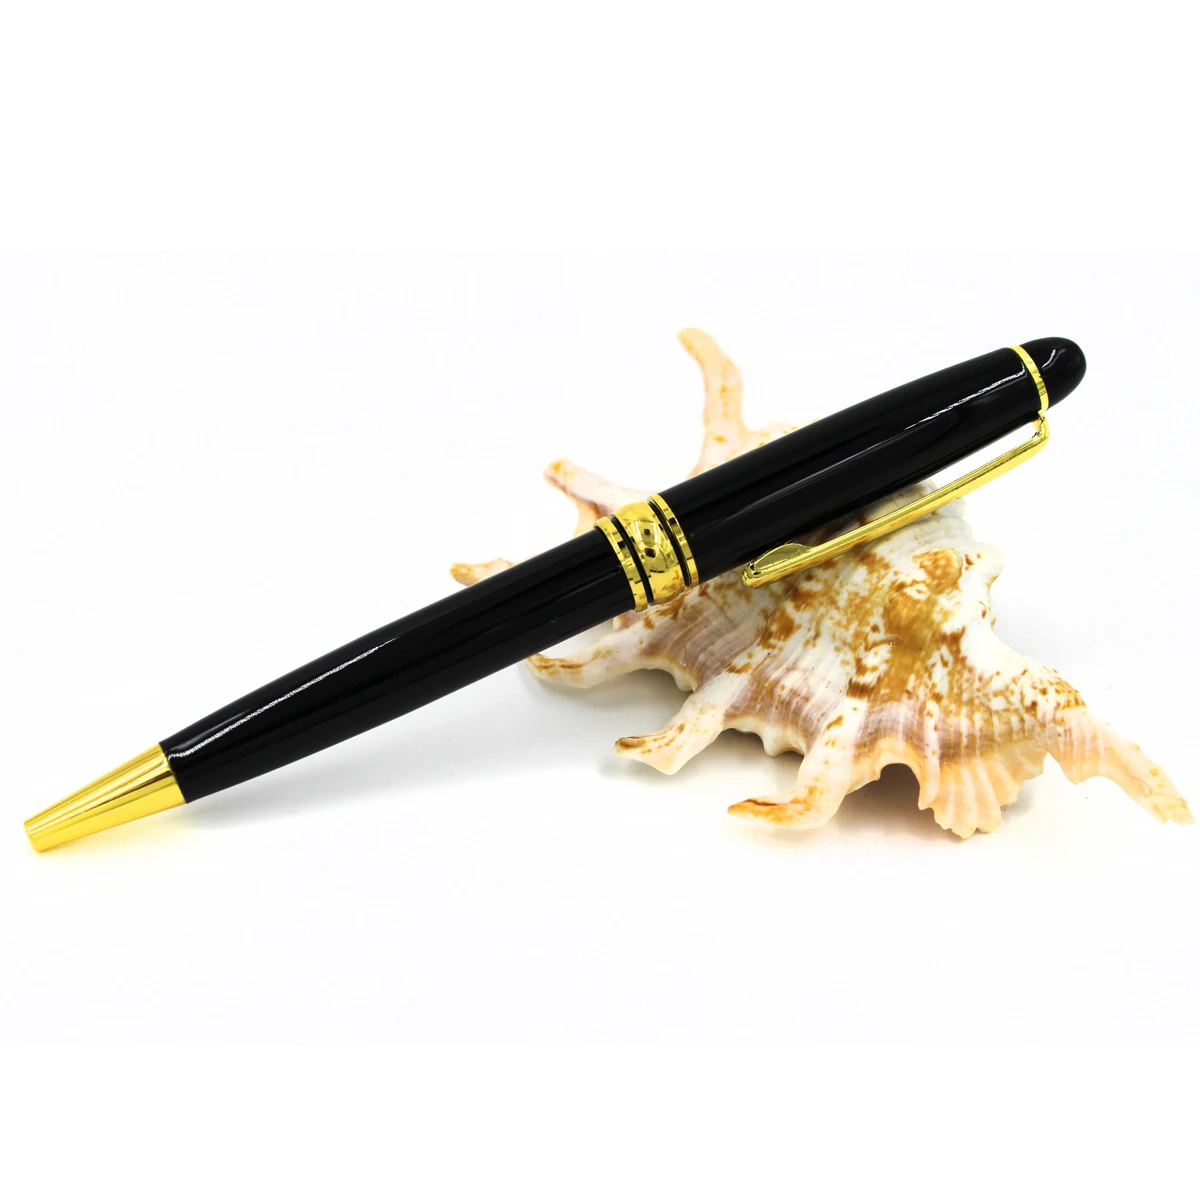 5 개 / 몫 금속 볼펜 밝은 크롬 볼펜 검은 금속 펜 골드 부품 높은 품질의 금속 볼펜